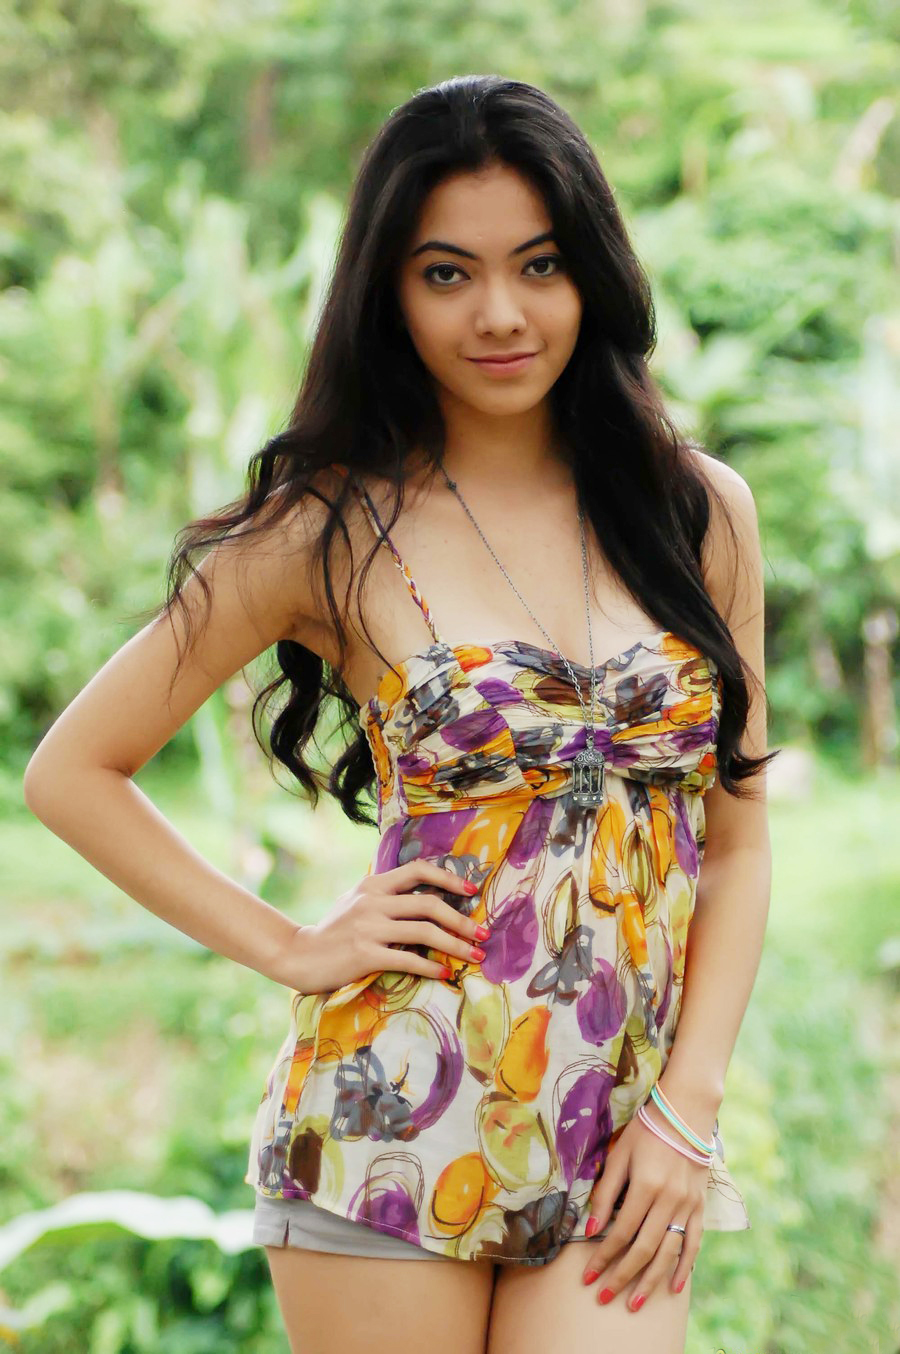 Foto Model Indonesia Yang Terkenal Paling Cantik Dan Seksi Dzargon free ima...